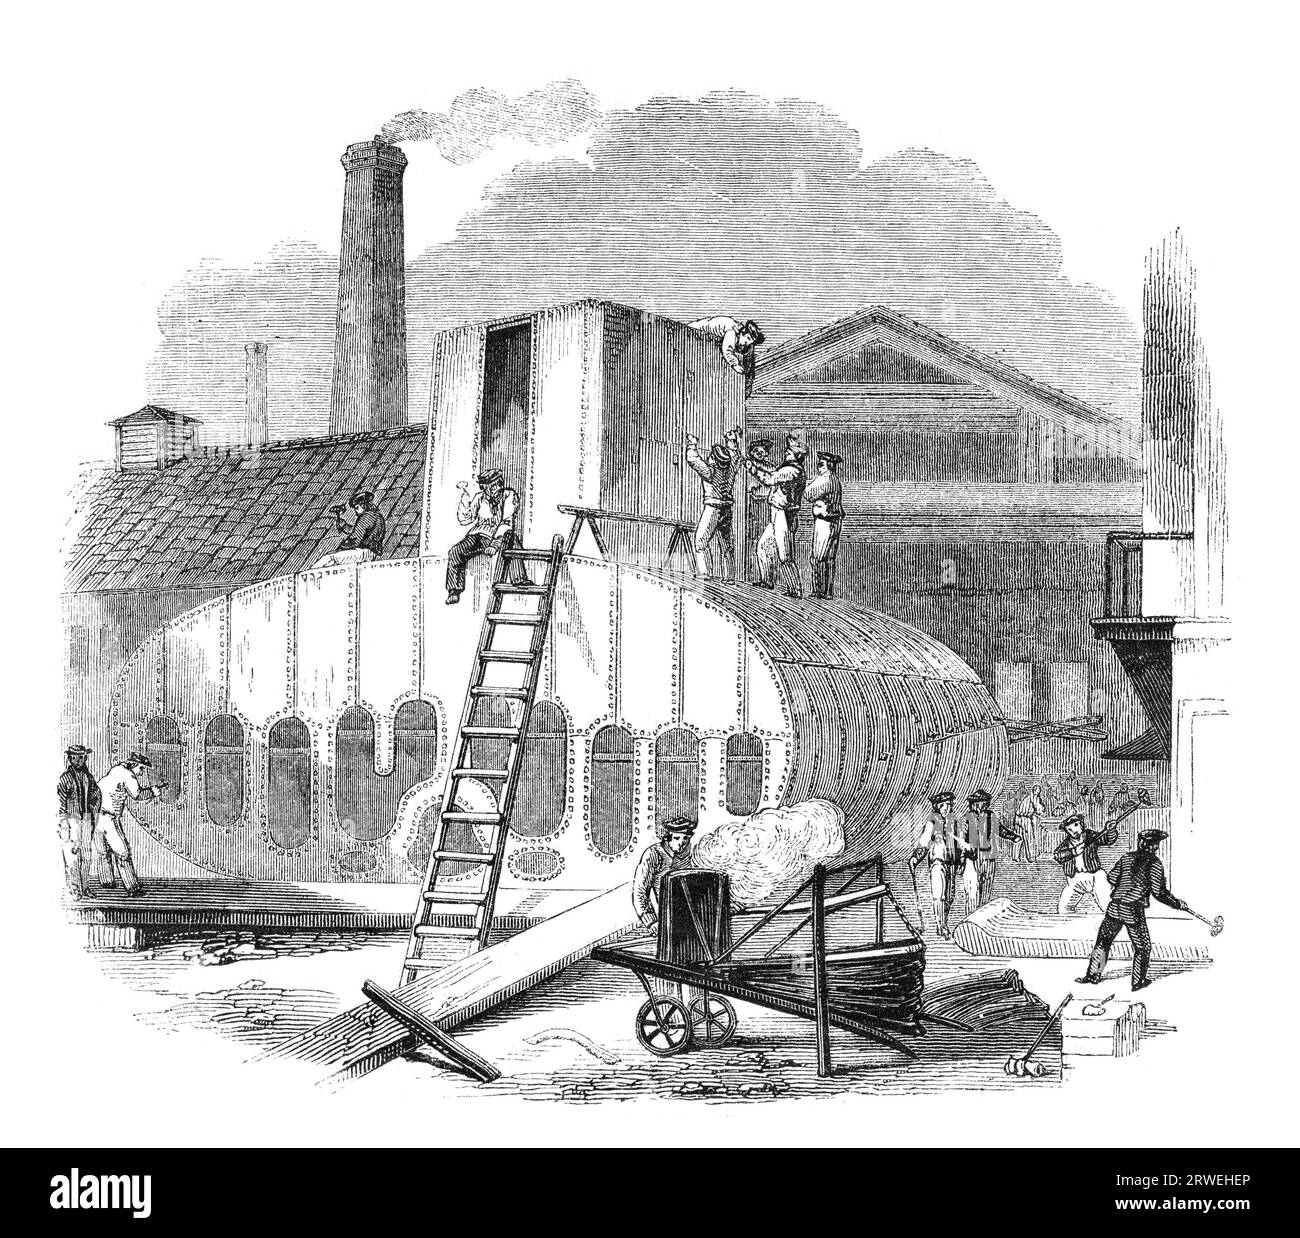 Un giorno al Clyde Steam-boat Works: Produzione di caldaie a vapore, fonderia Vulcan. Incisione da una rivista britannica stampata nel 1843 Foto Stock